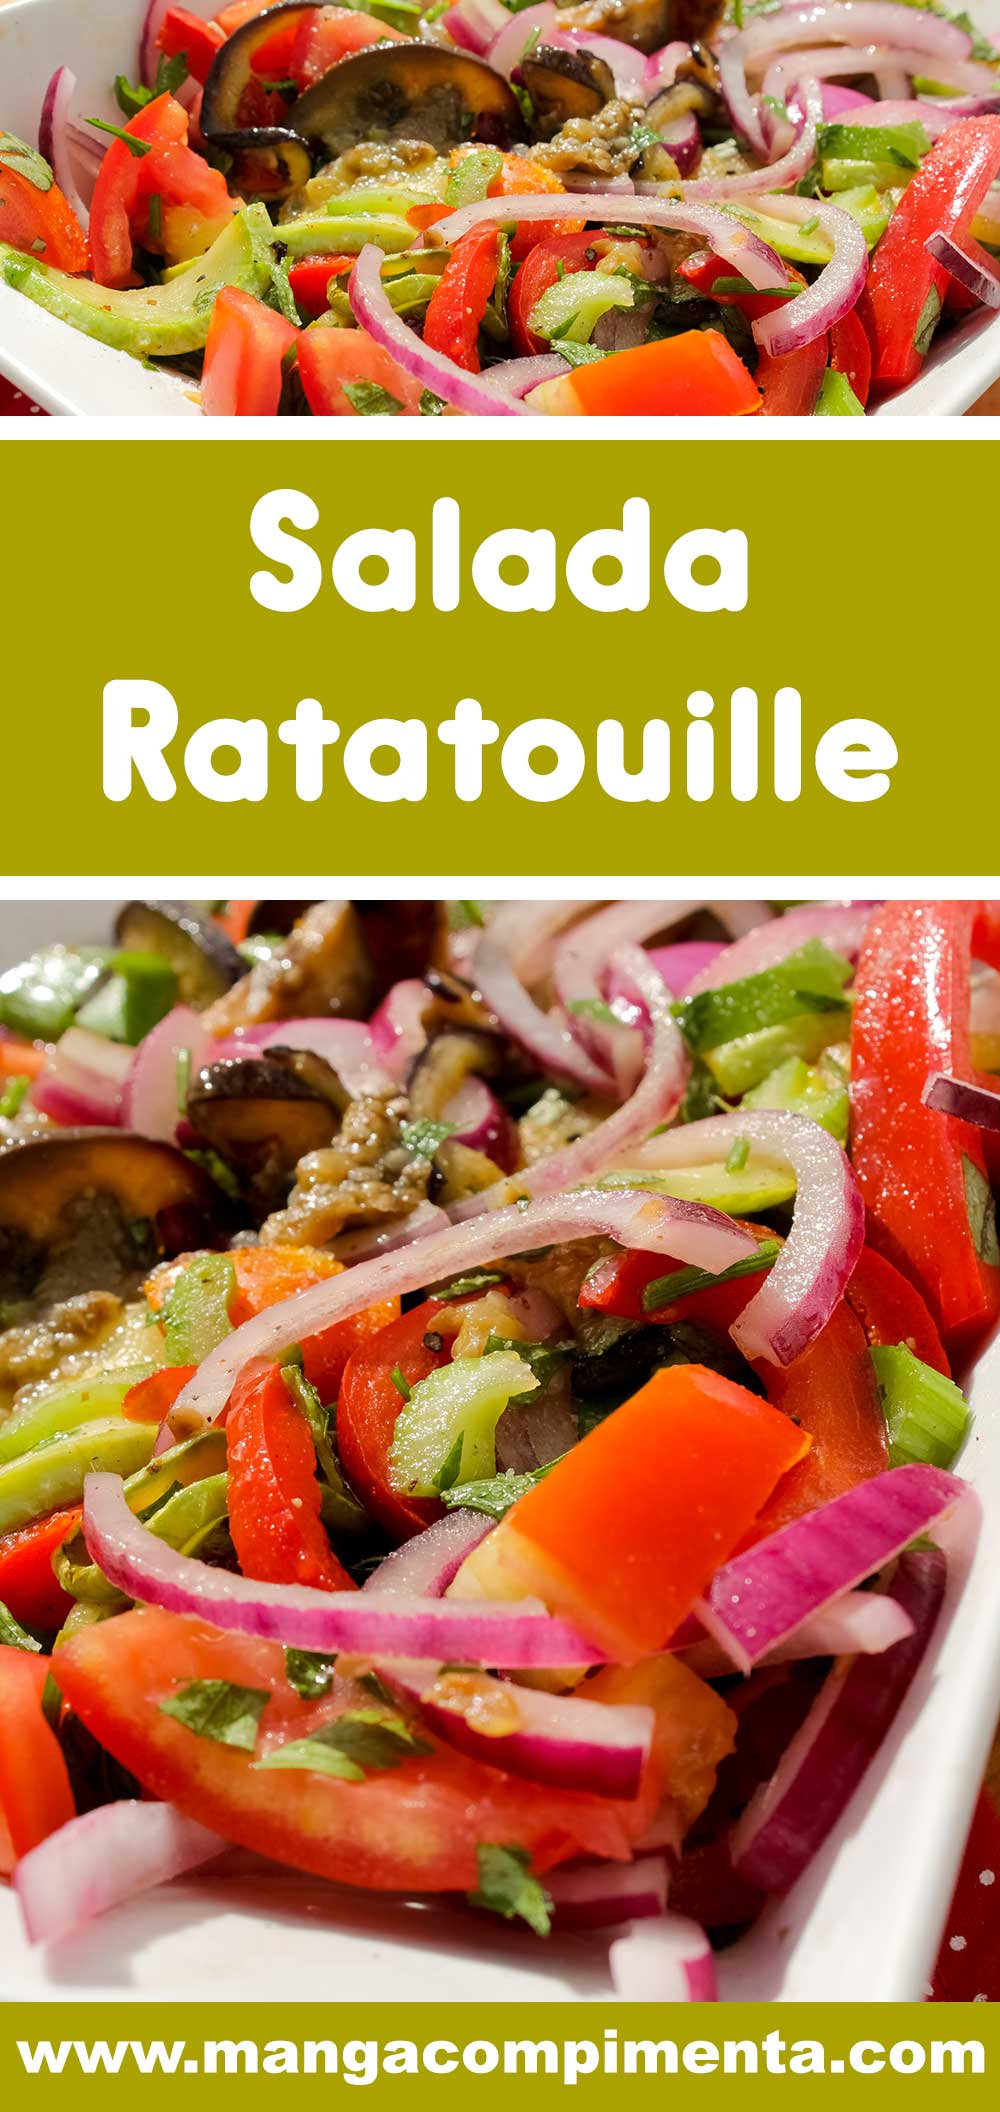 Receita de Salada Ratatouille - comidinhas do bem para o verão!